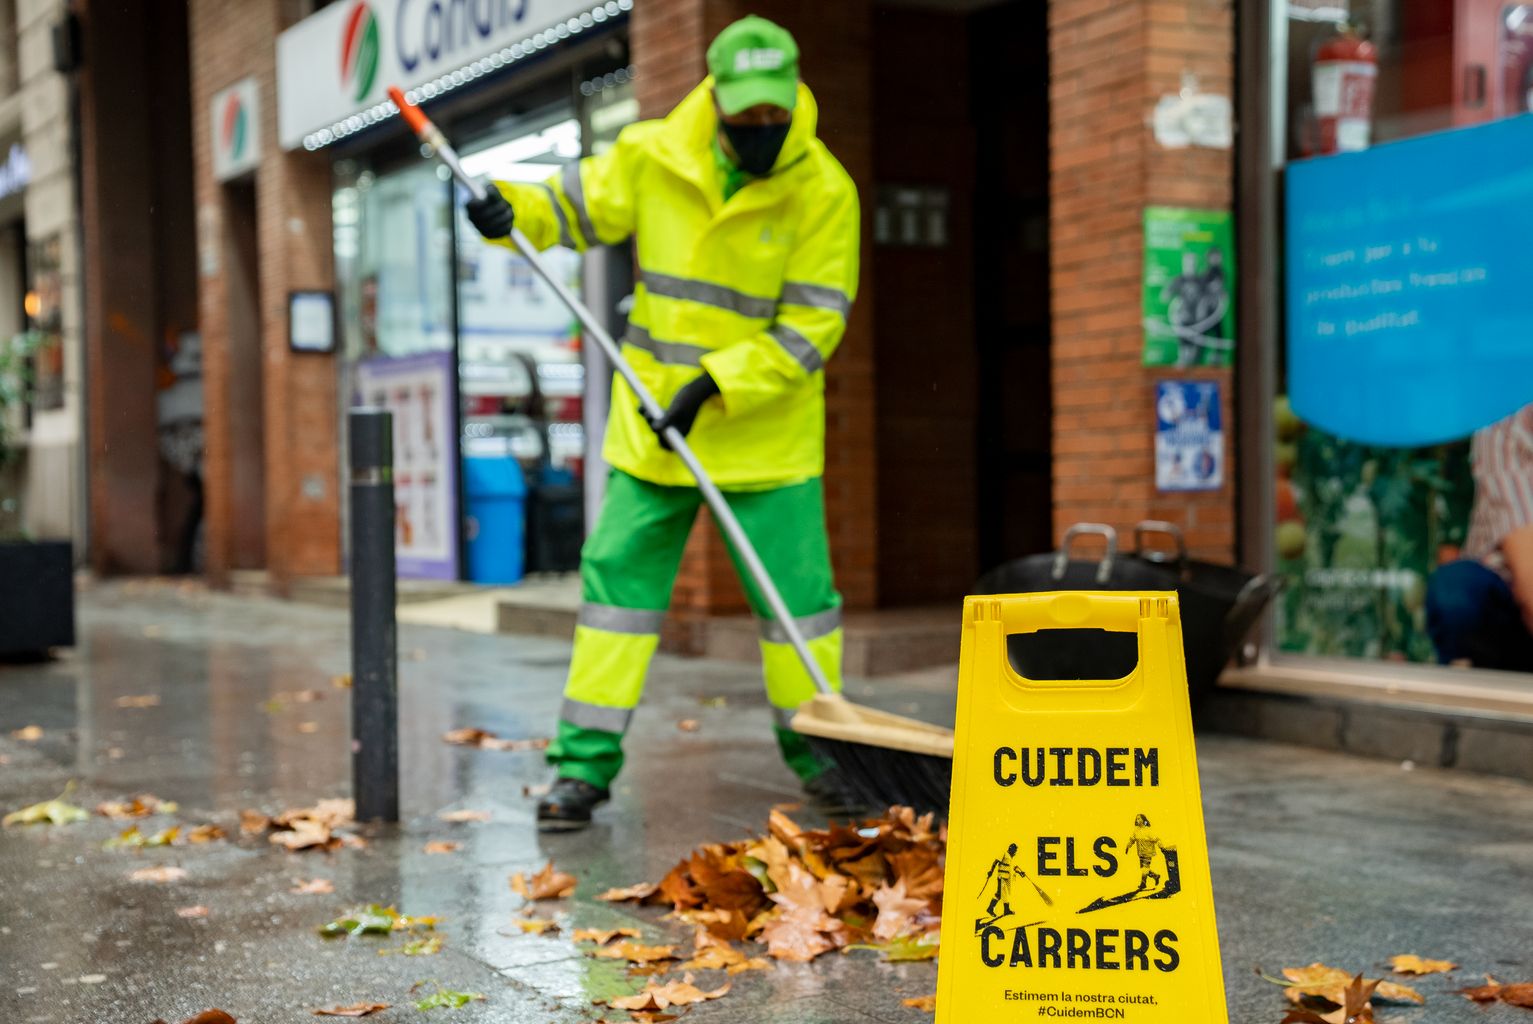 Un trabajador del Servicio de Limpieza barre las hojas secas de una acera de la rambla del Poblenou. Ha puesto un indicador de aviso con el letrero “Cuidem els carrers”